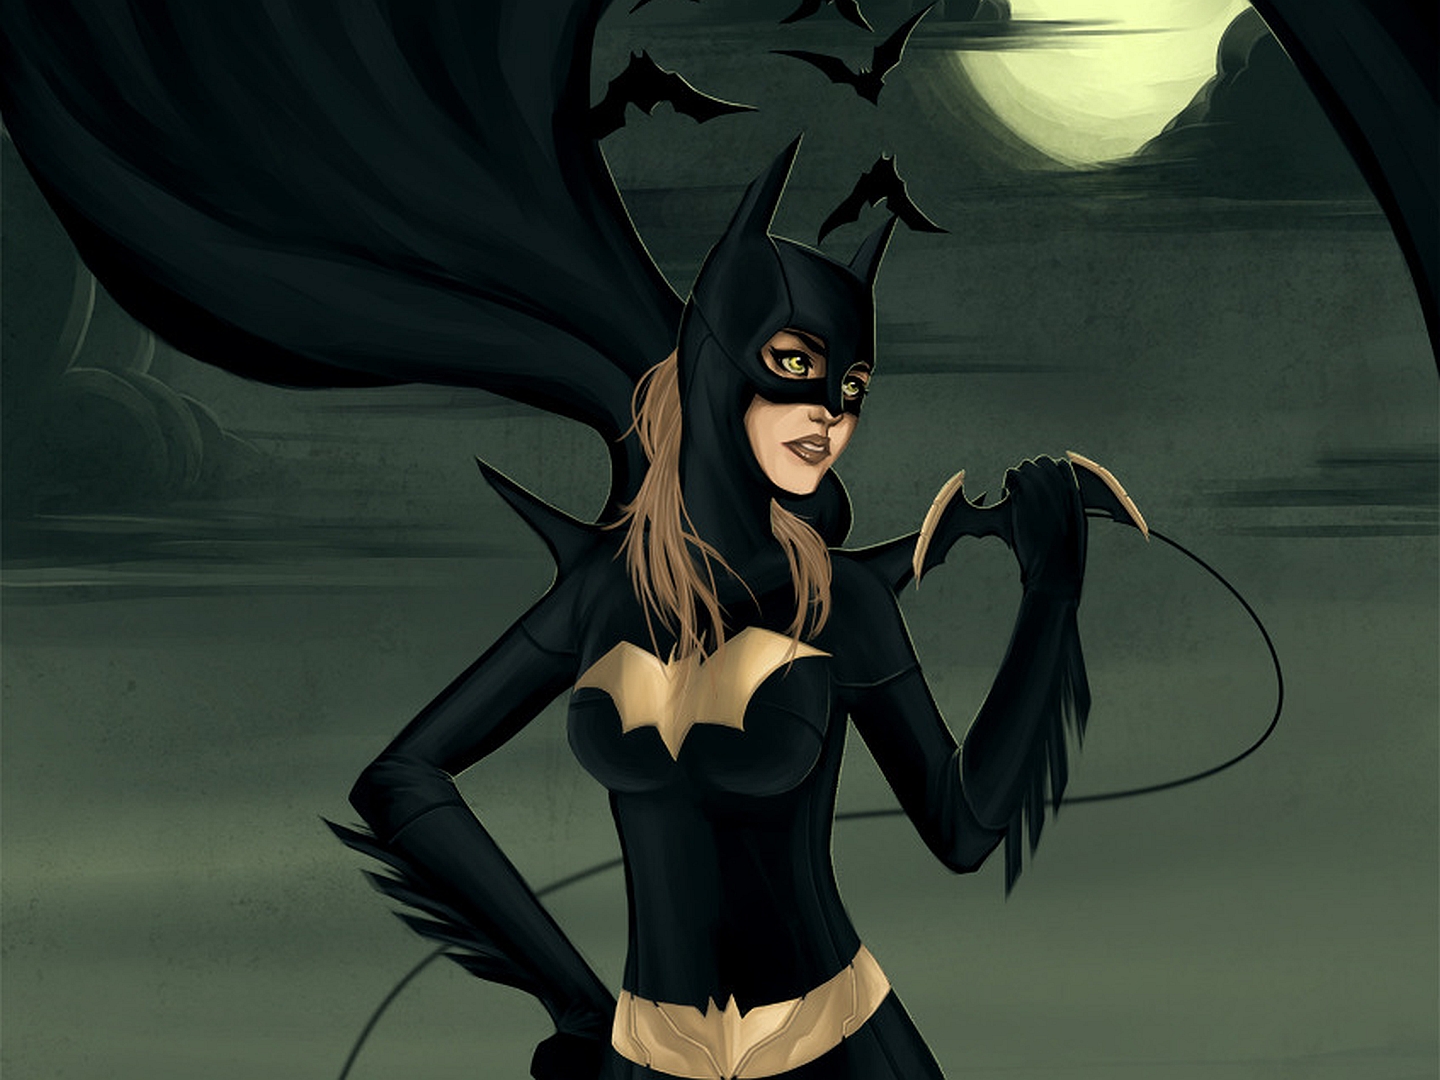 Ics Batgirl Wallpaper